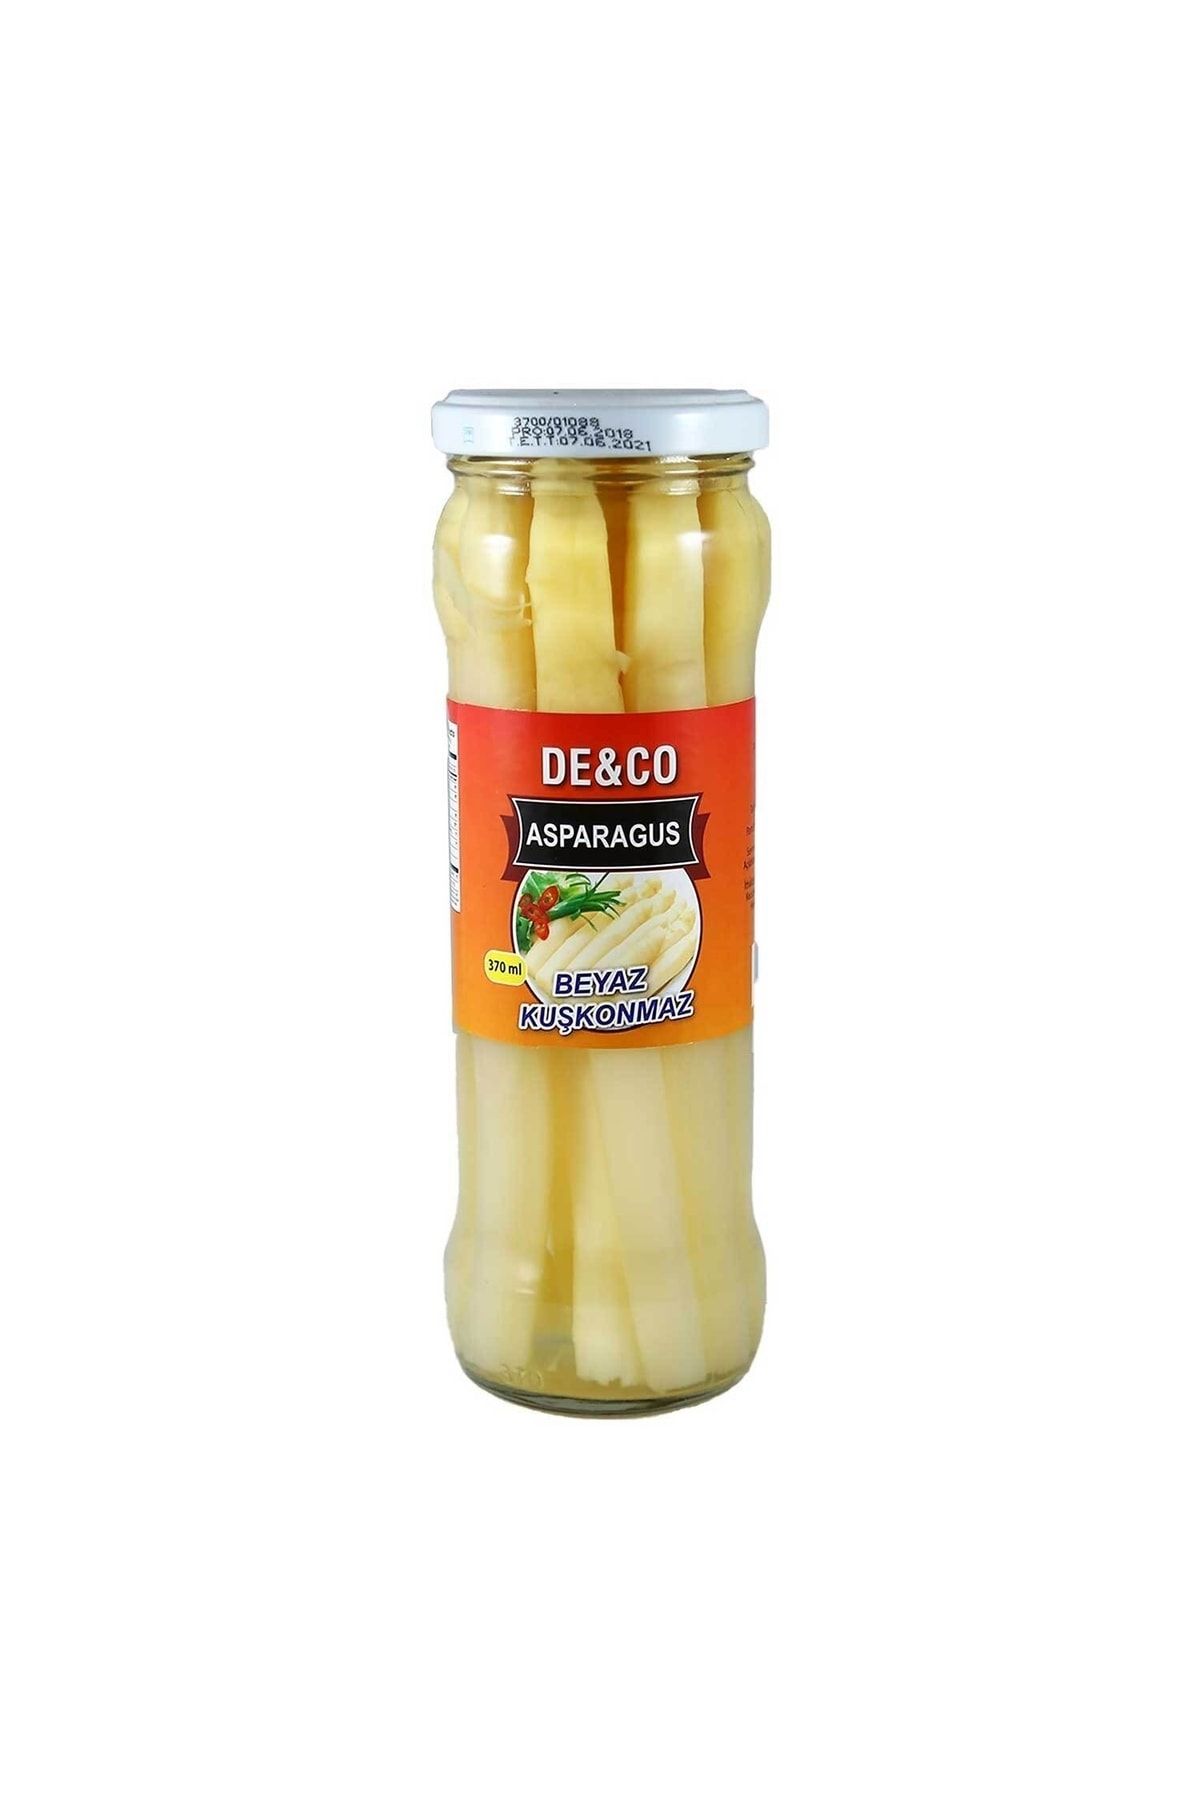 DECO Asparagus Beyaz Kuşkonmaz 370 ml